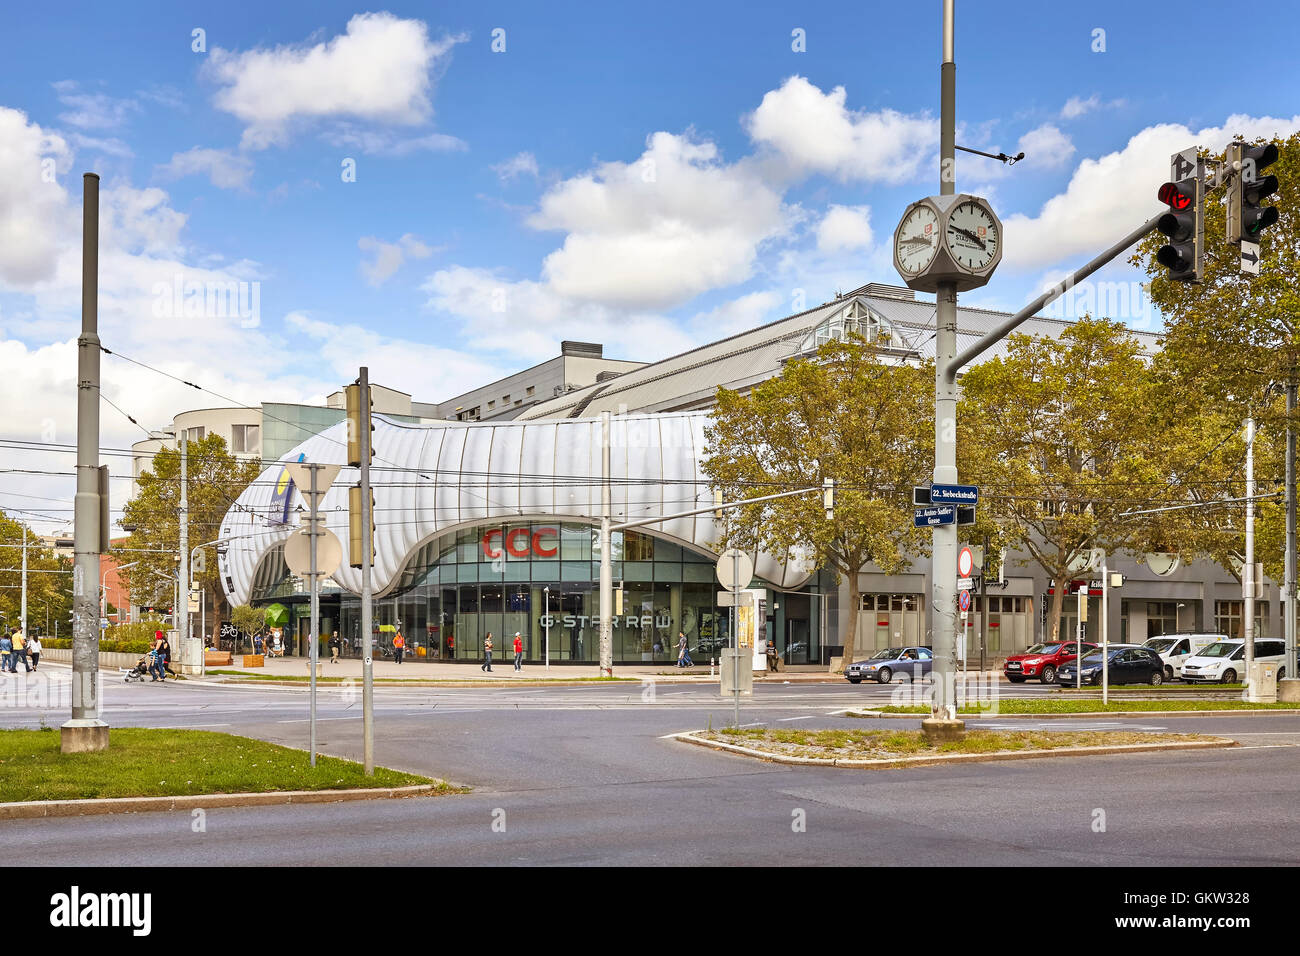 Wien, Österreich - 13. August 2016: Äußere des Donau Zentrum Wagramer Straße, Einkaufszentren, eines der größten Einkaufszentren in der Stadt. Stockfoto